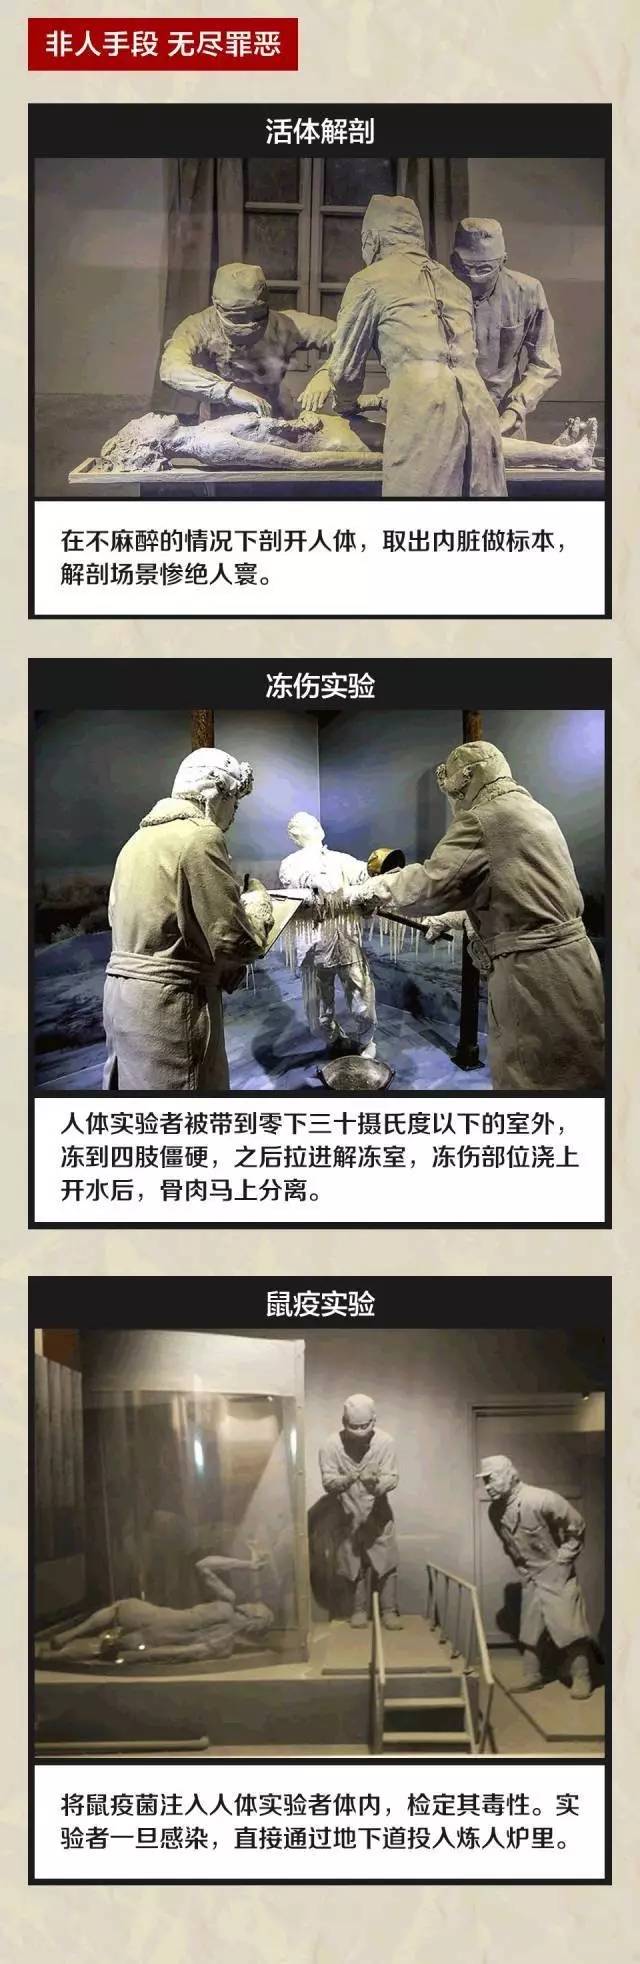 731部队的队员在法庭上详细供述了在生化武器开发中使用中国人以及